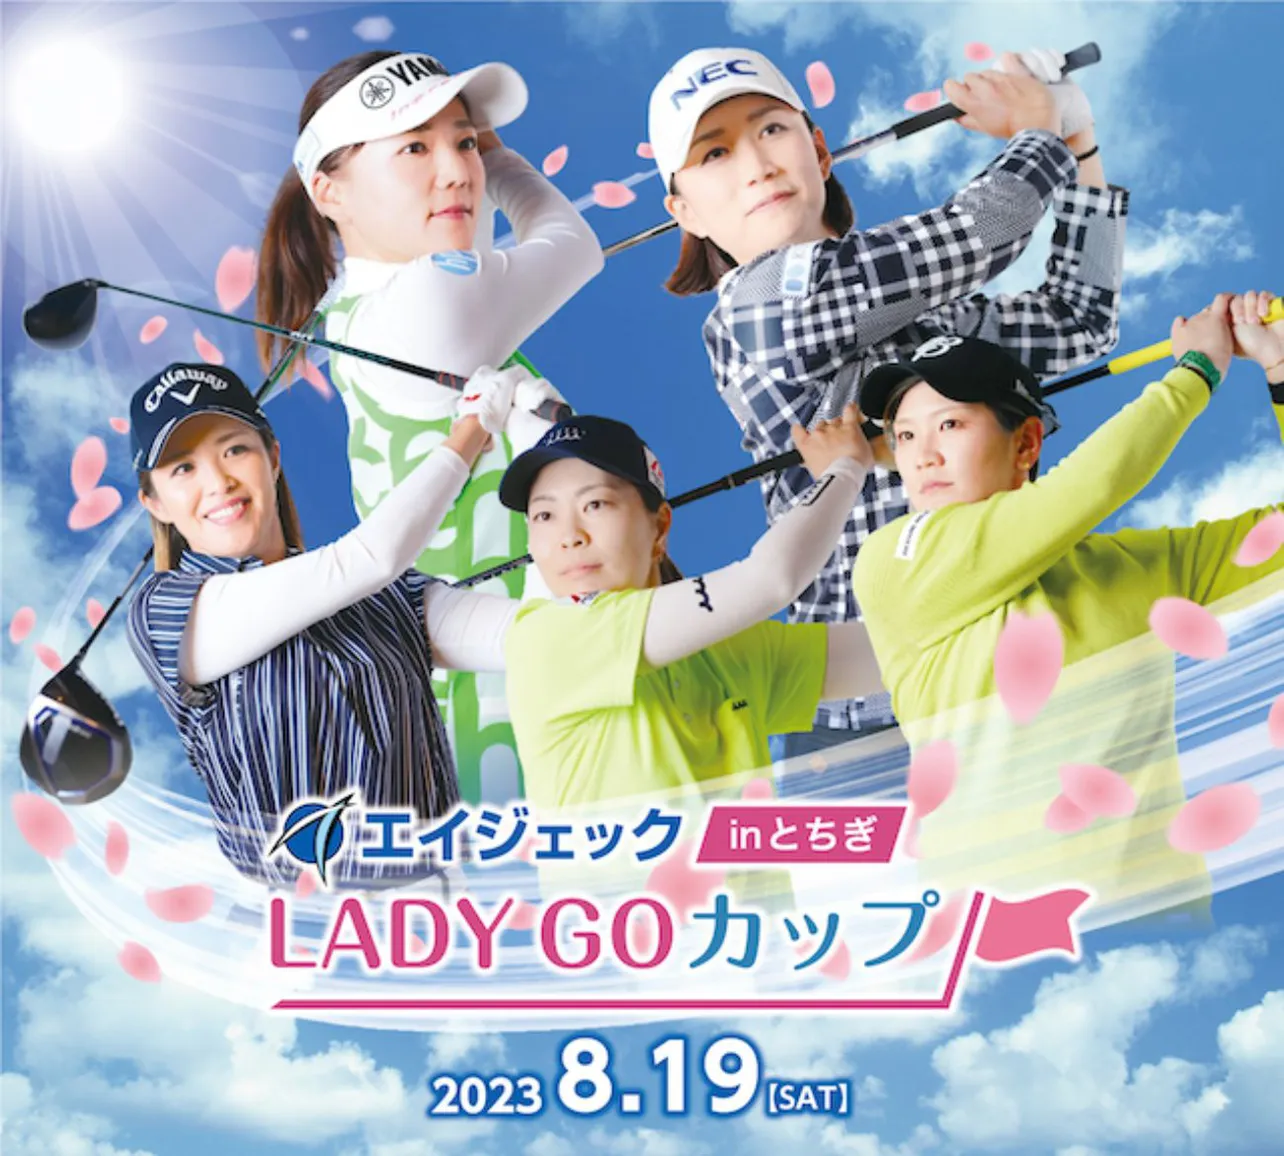 賞金総額700万円を賭けて女子プロゴルファーが熱戦を繰り広げる「エイジェック LADY GO カップ」